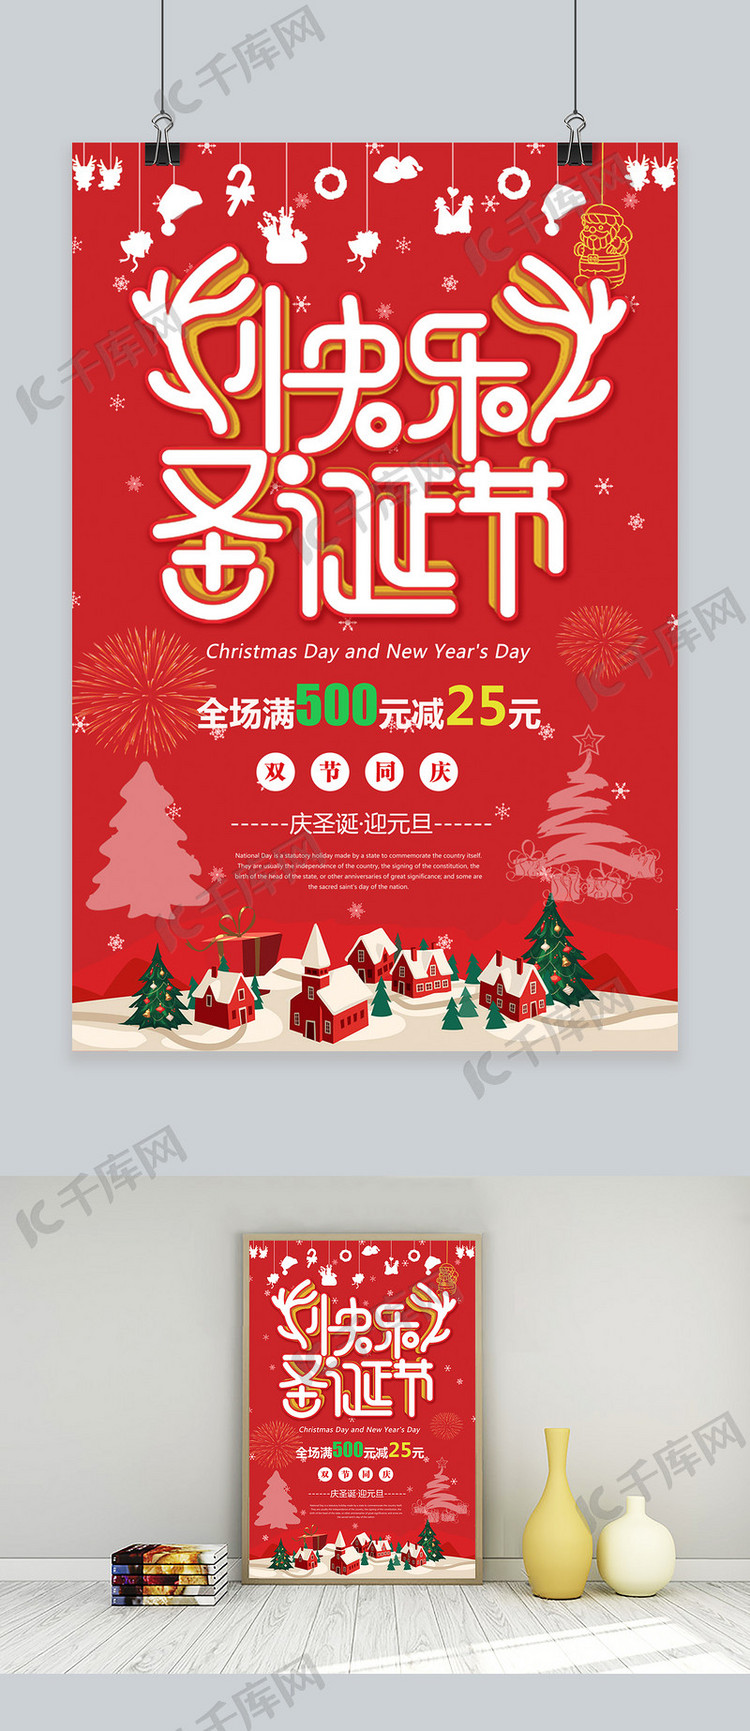 千库原创红色圣诞节促销宣传海报